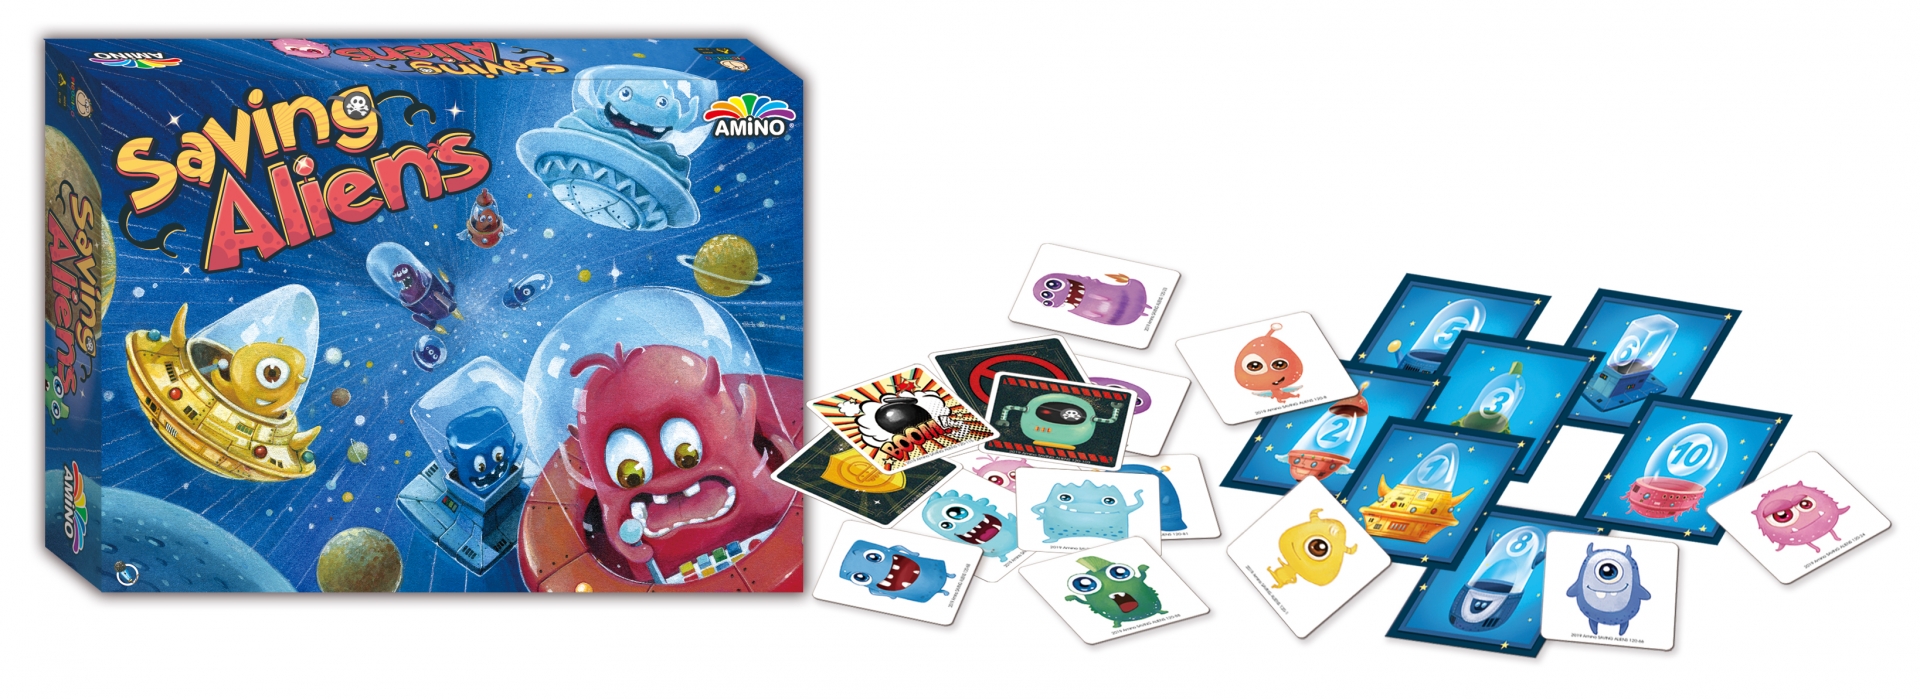 圖為洛特國際出版AMINO套裝桌遊中的「Saving Aliens」產品